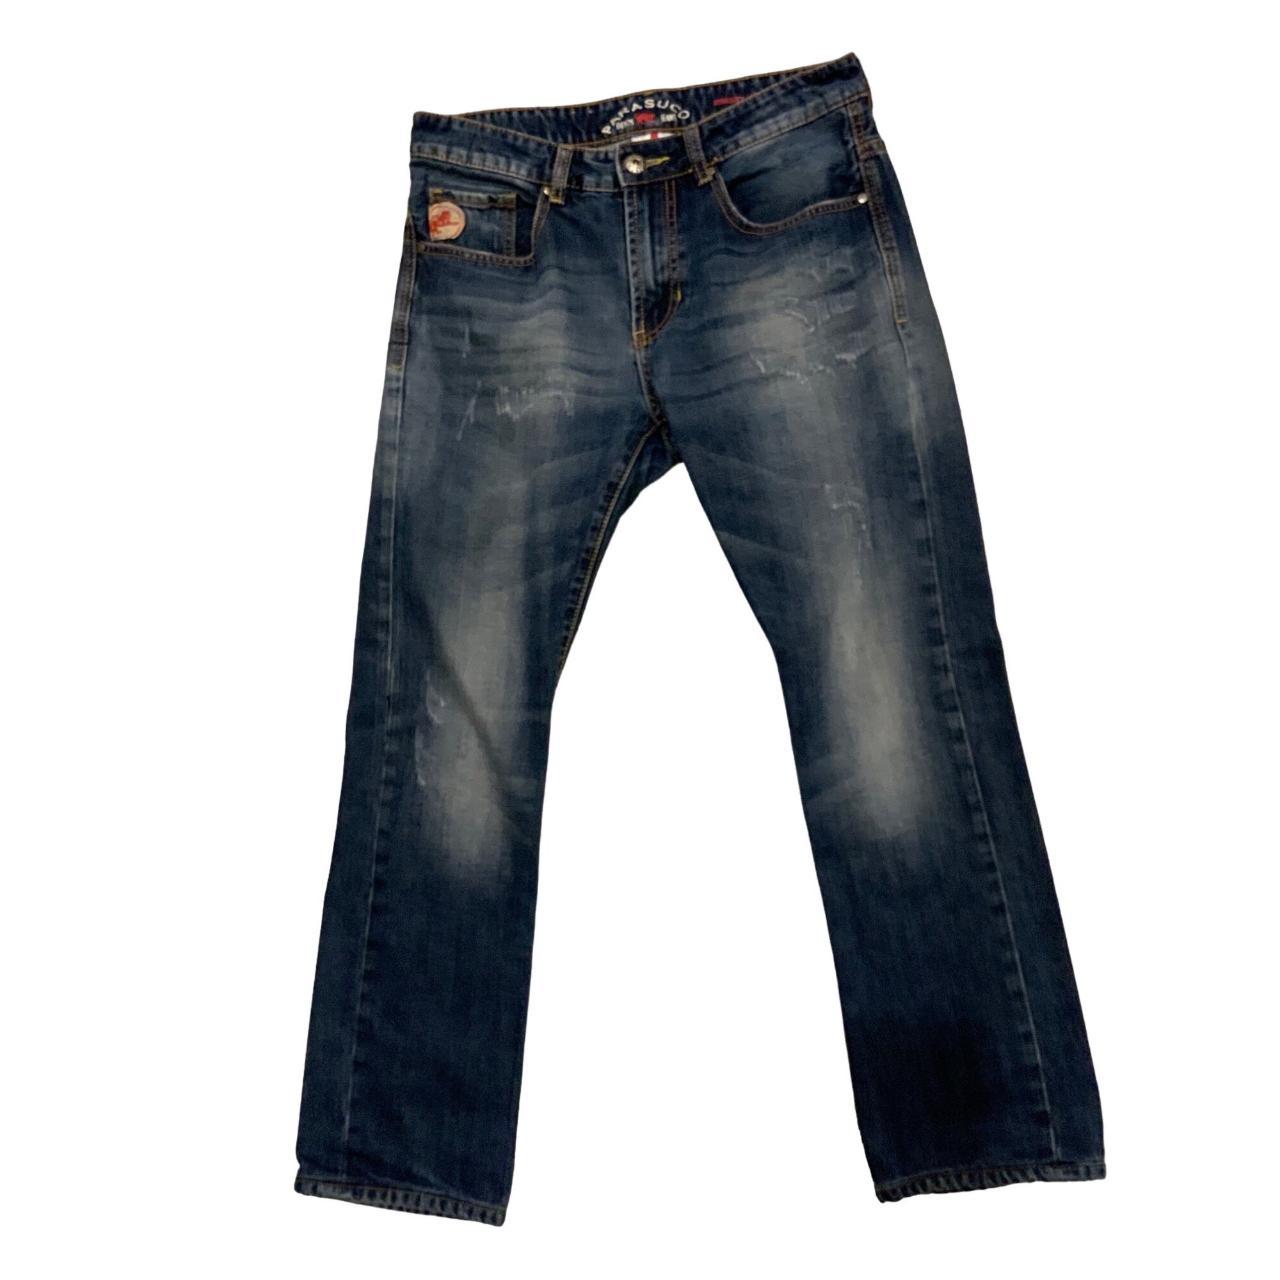 Parasuco Men's Blue Jeans (2)